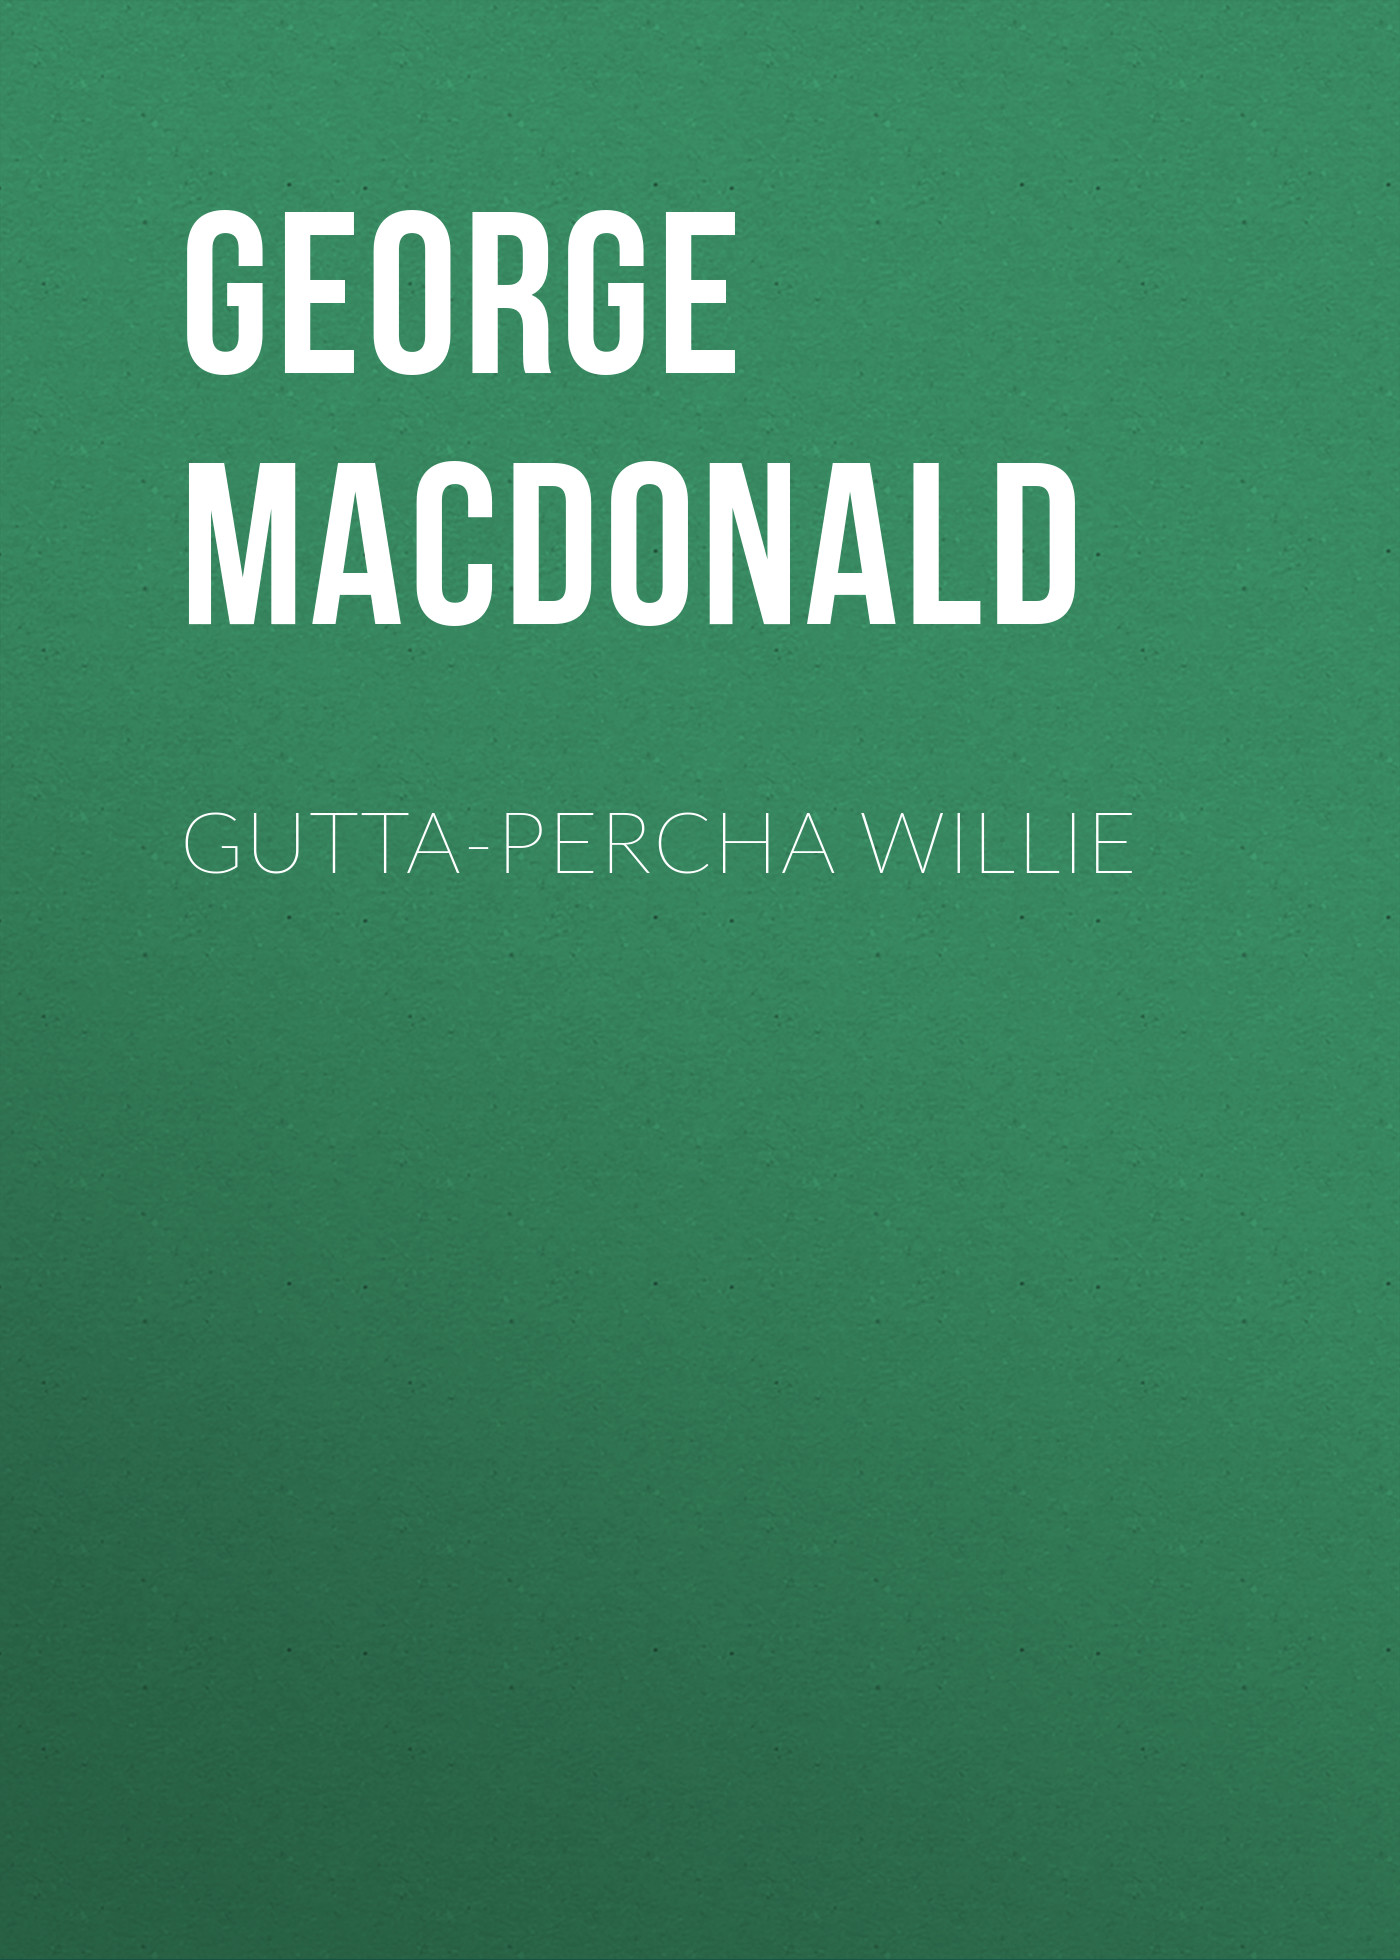 Книга Gutta-Percha Willie из серии , созданная George MacDonald, может относится к жанру Зарубежные детские книги, Зарубежная старинная литература, Зарубежная классика. Стоимость электронной книги Gutta-Percha Willie с идентификатором 35007681 составляет 0 руб.